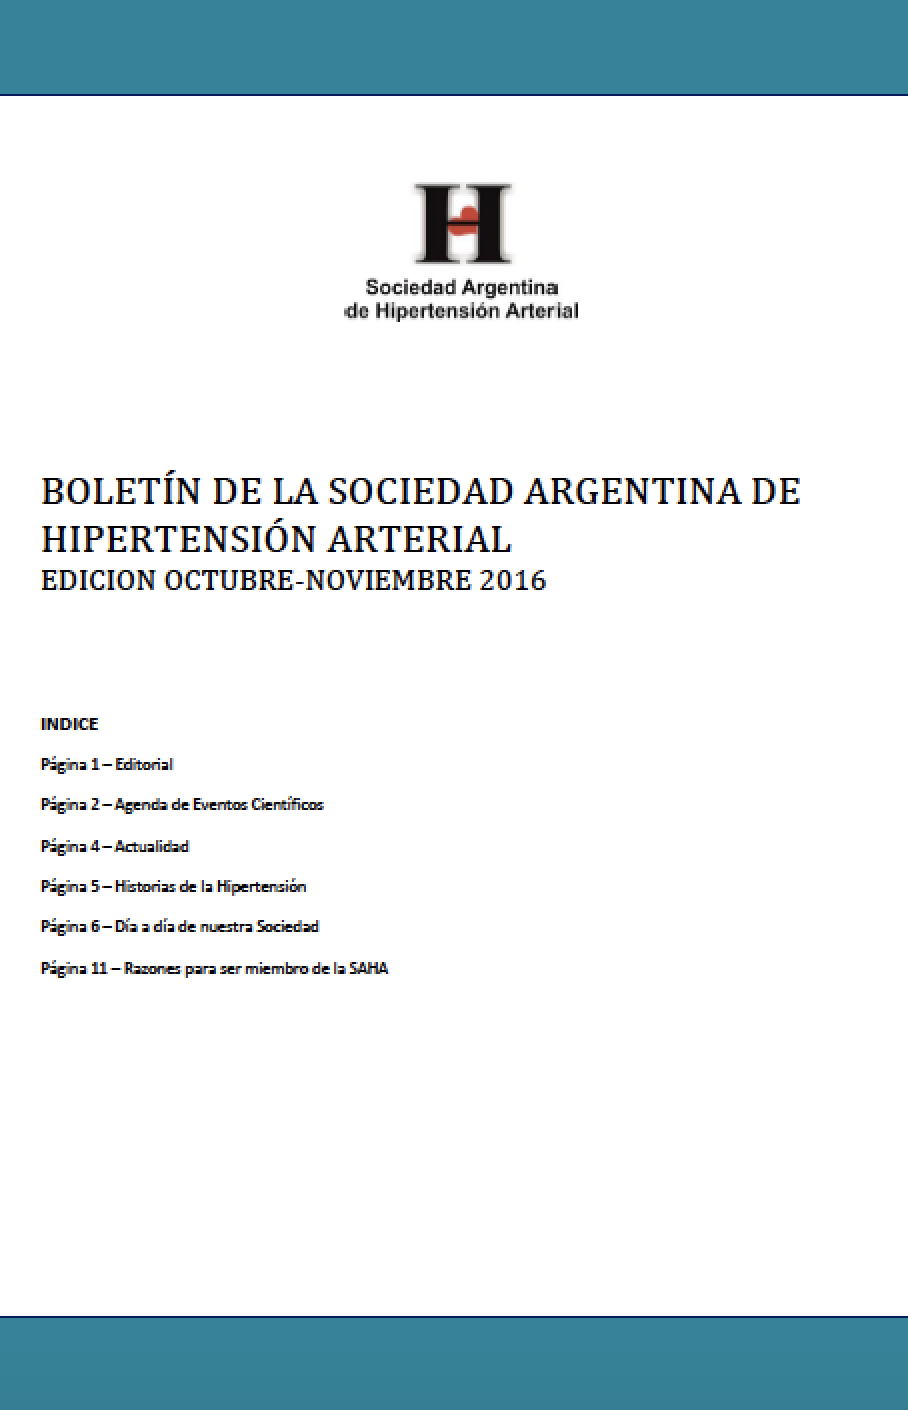 Boletín Periódico Sociedad Argentina de Hipertensión Arterial Octubre 2013